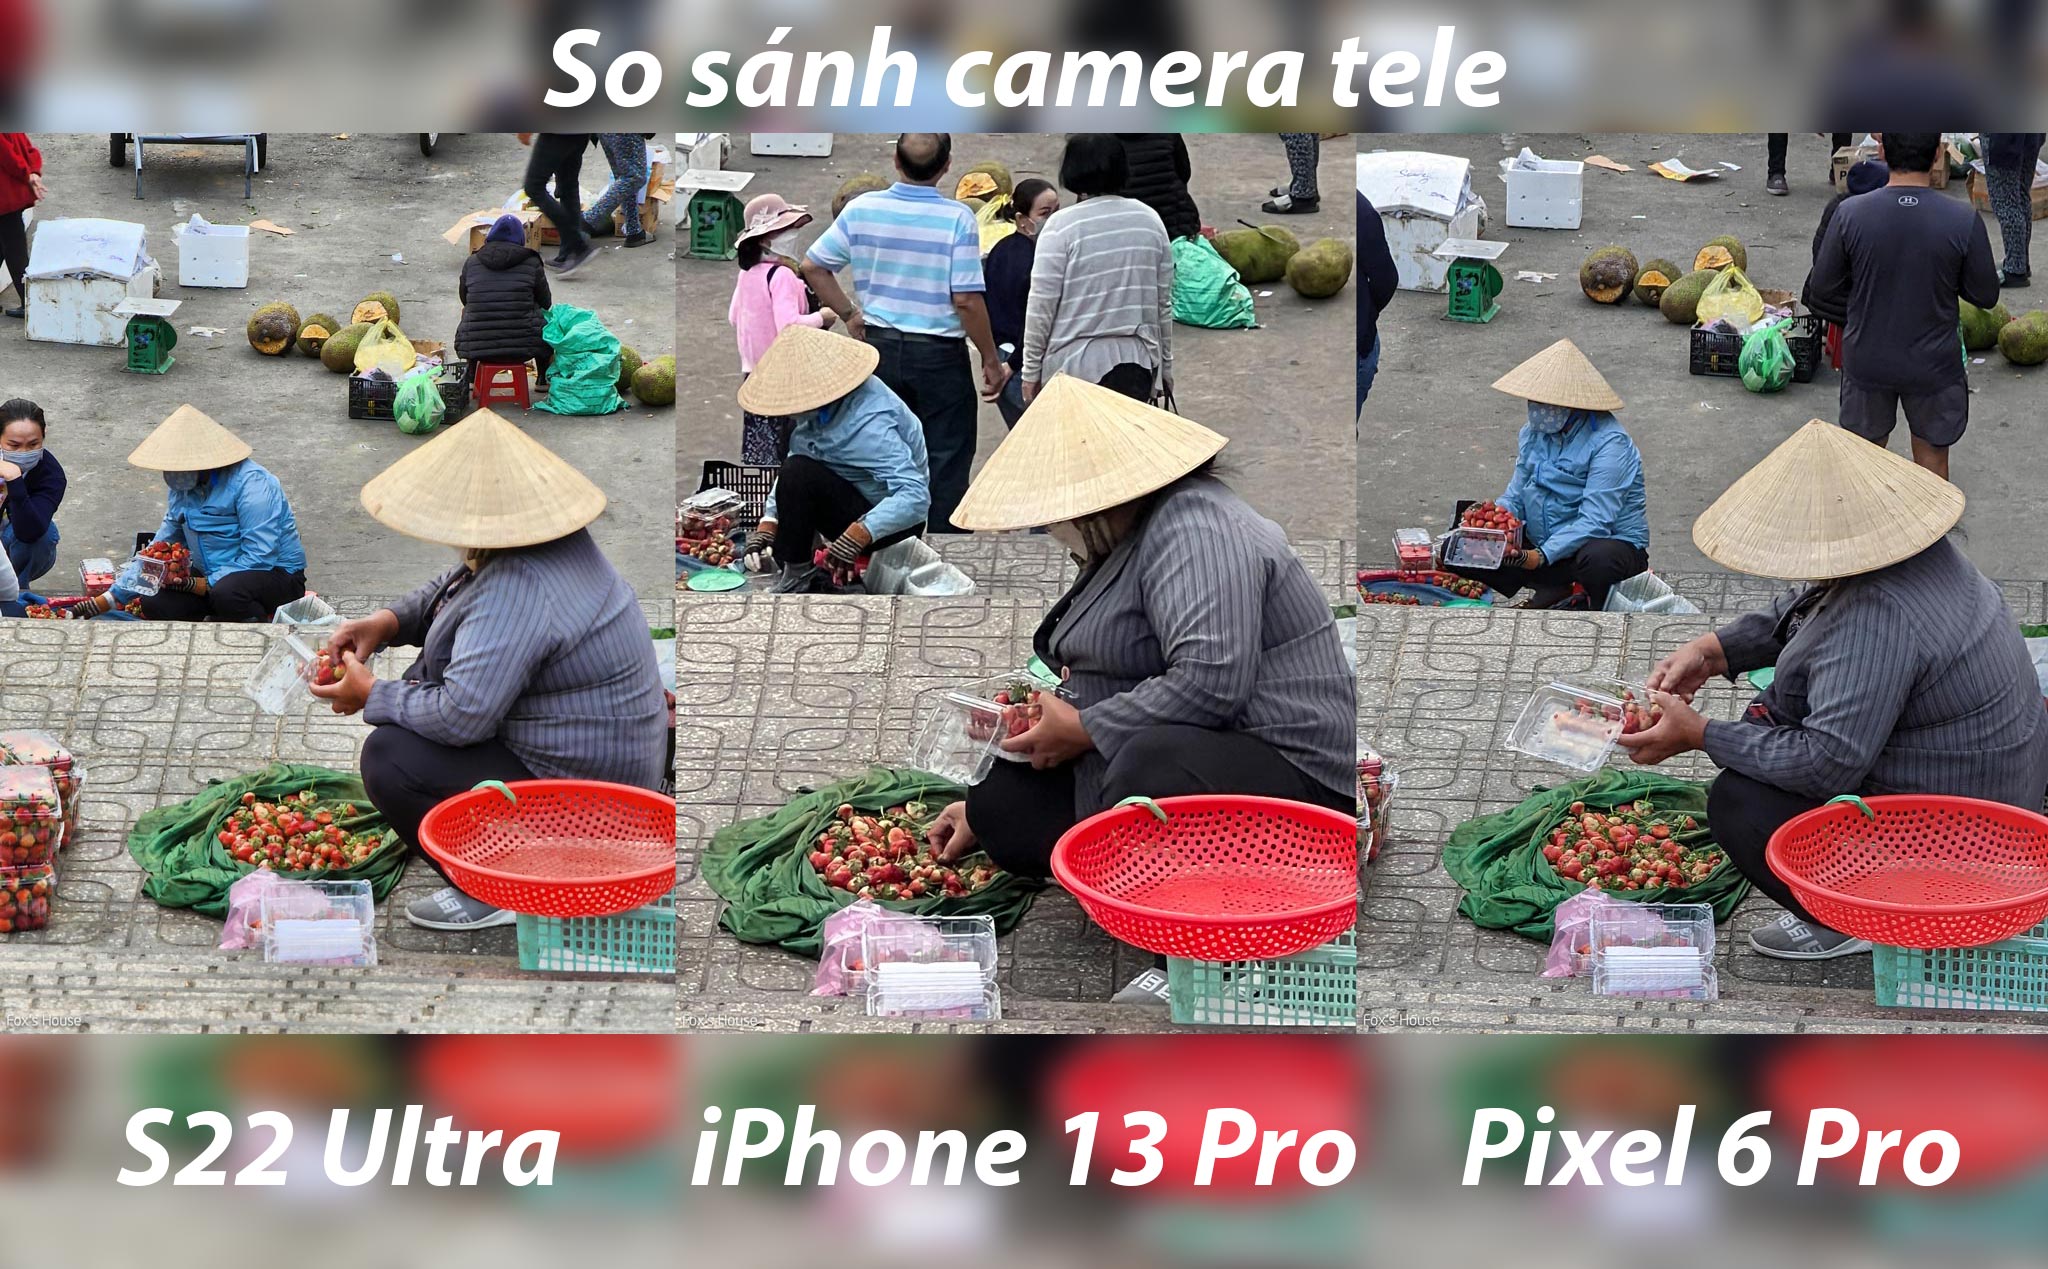 S22 Ultra - iPhone 13 Pro - Pixel 6 Pro: Kết quả game và nhận xét camera tele của 3 máy